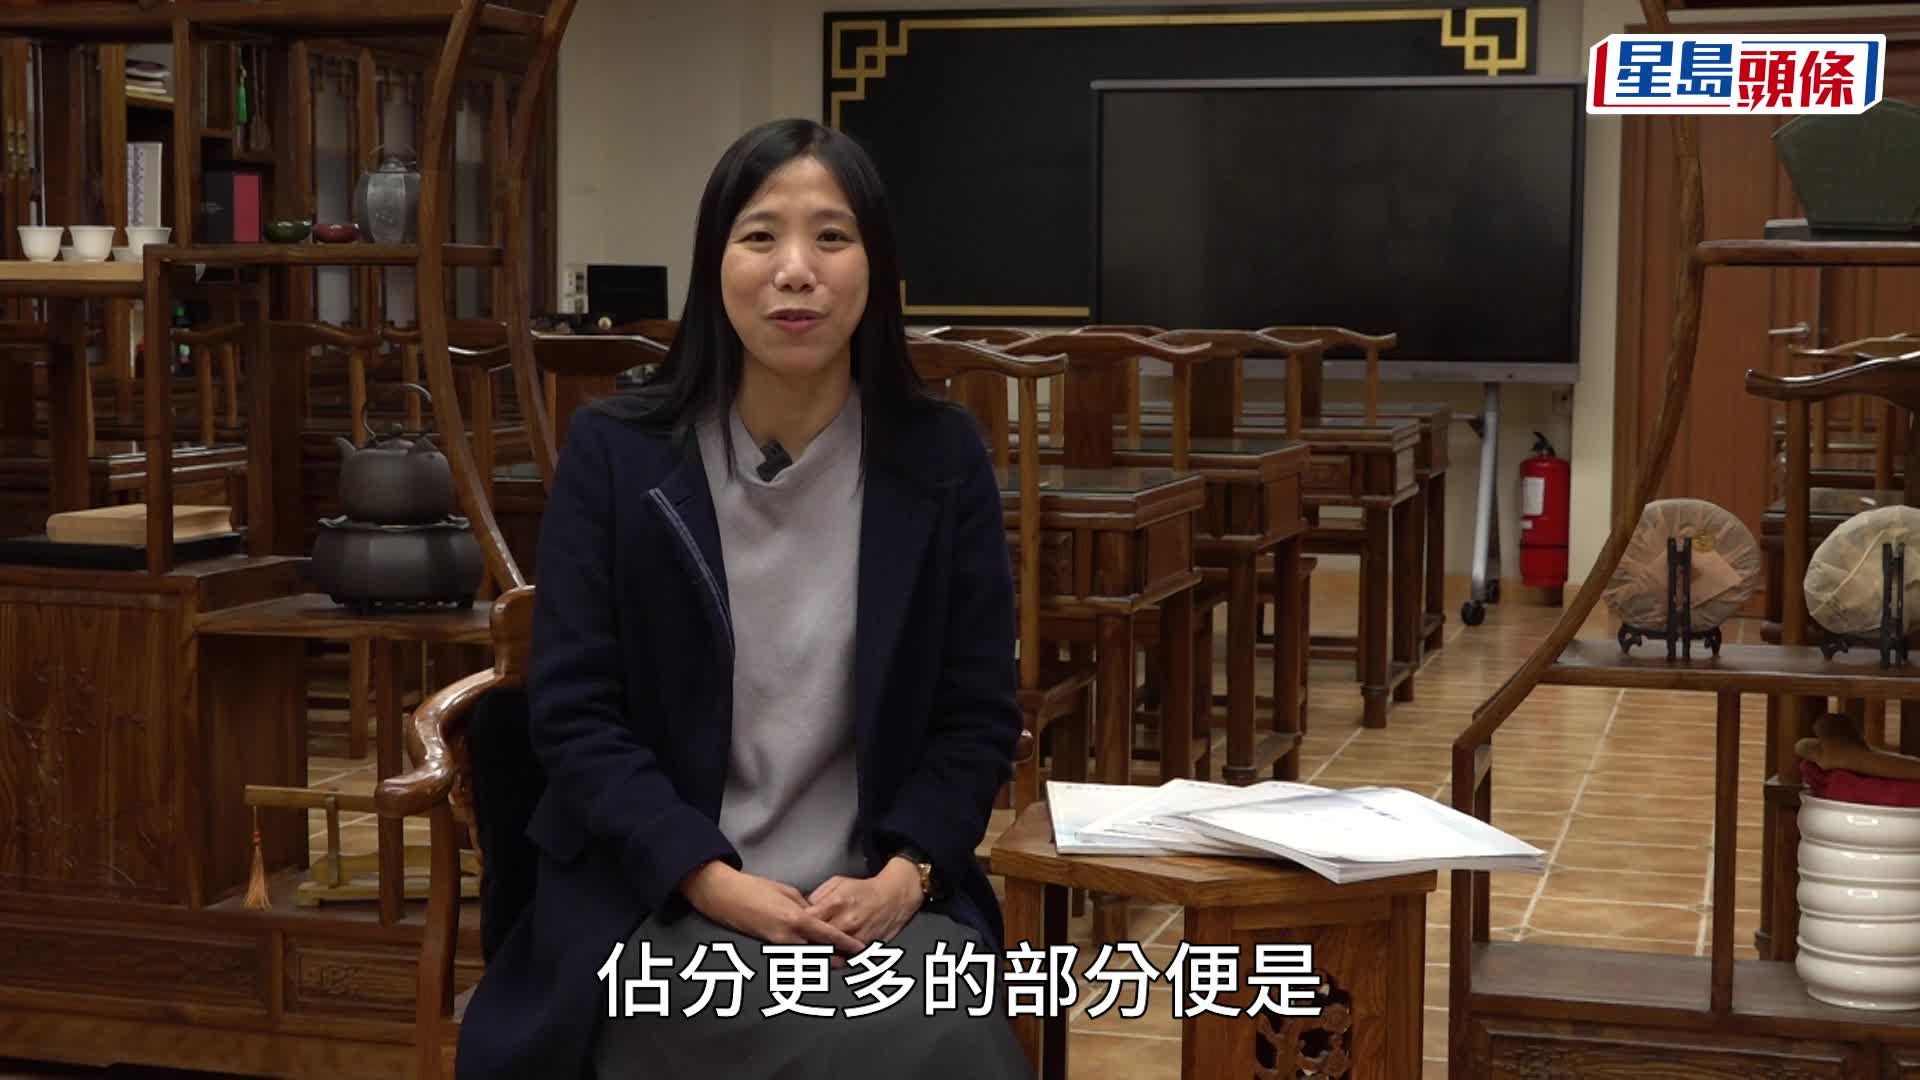 九龍真光中學副校長及中文科科主任梁靜雲分析今析DSE中文科。